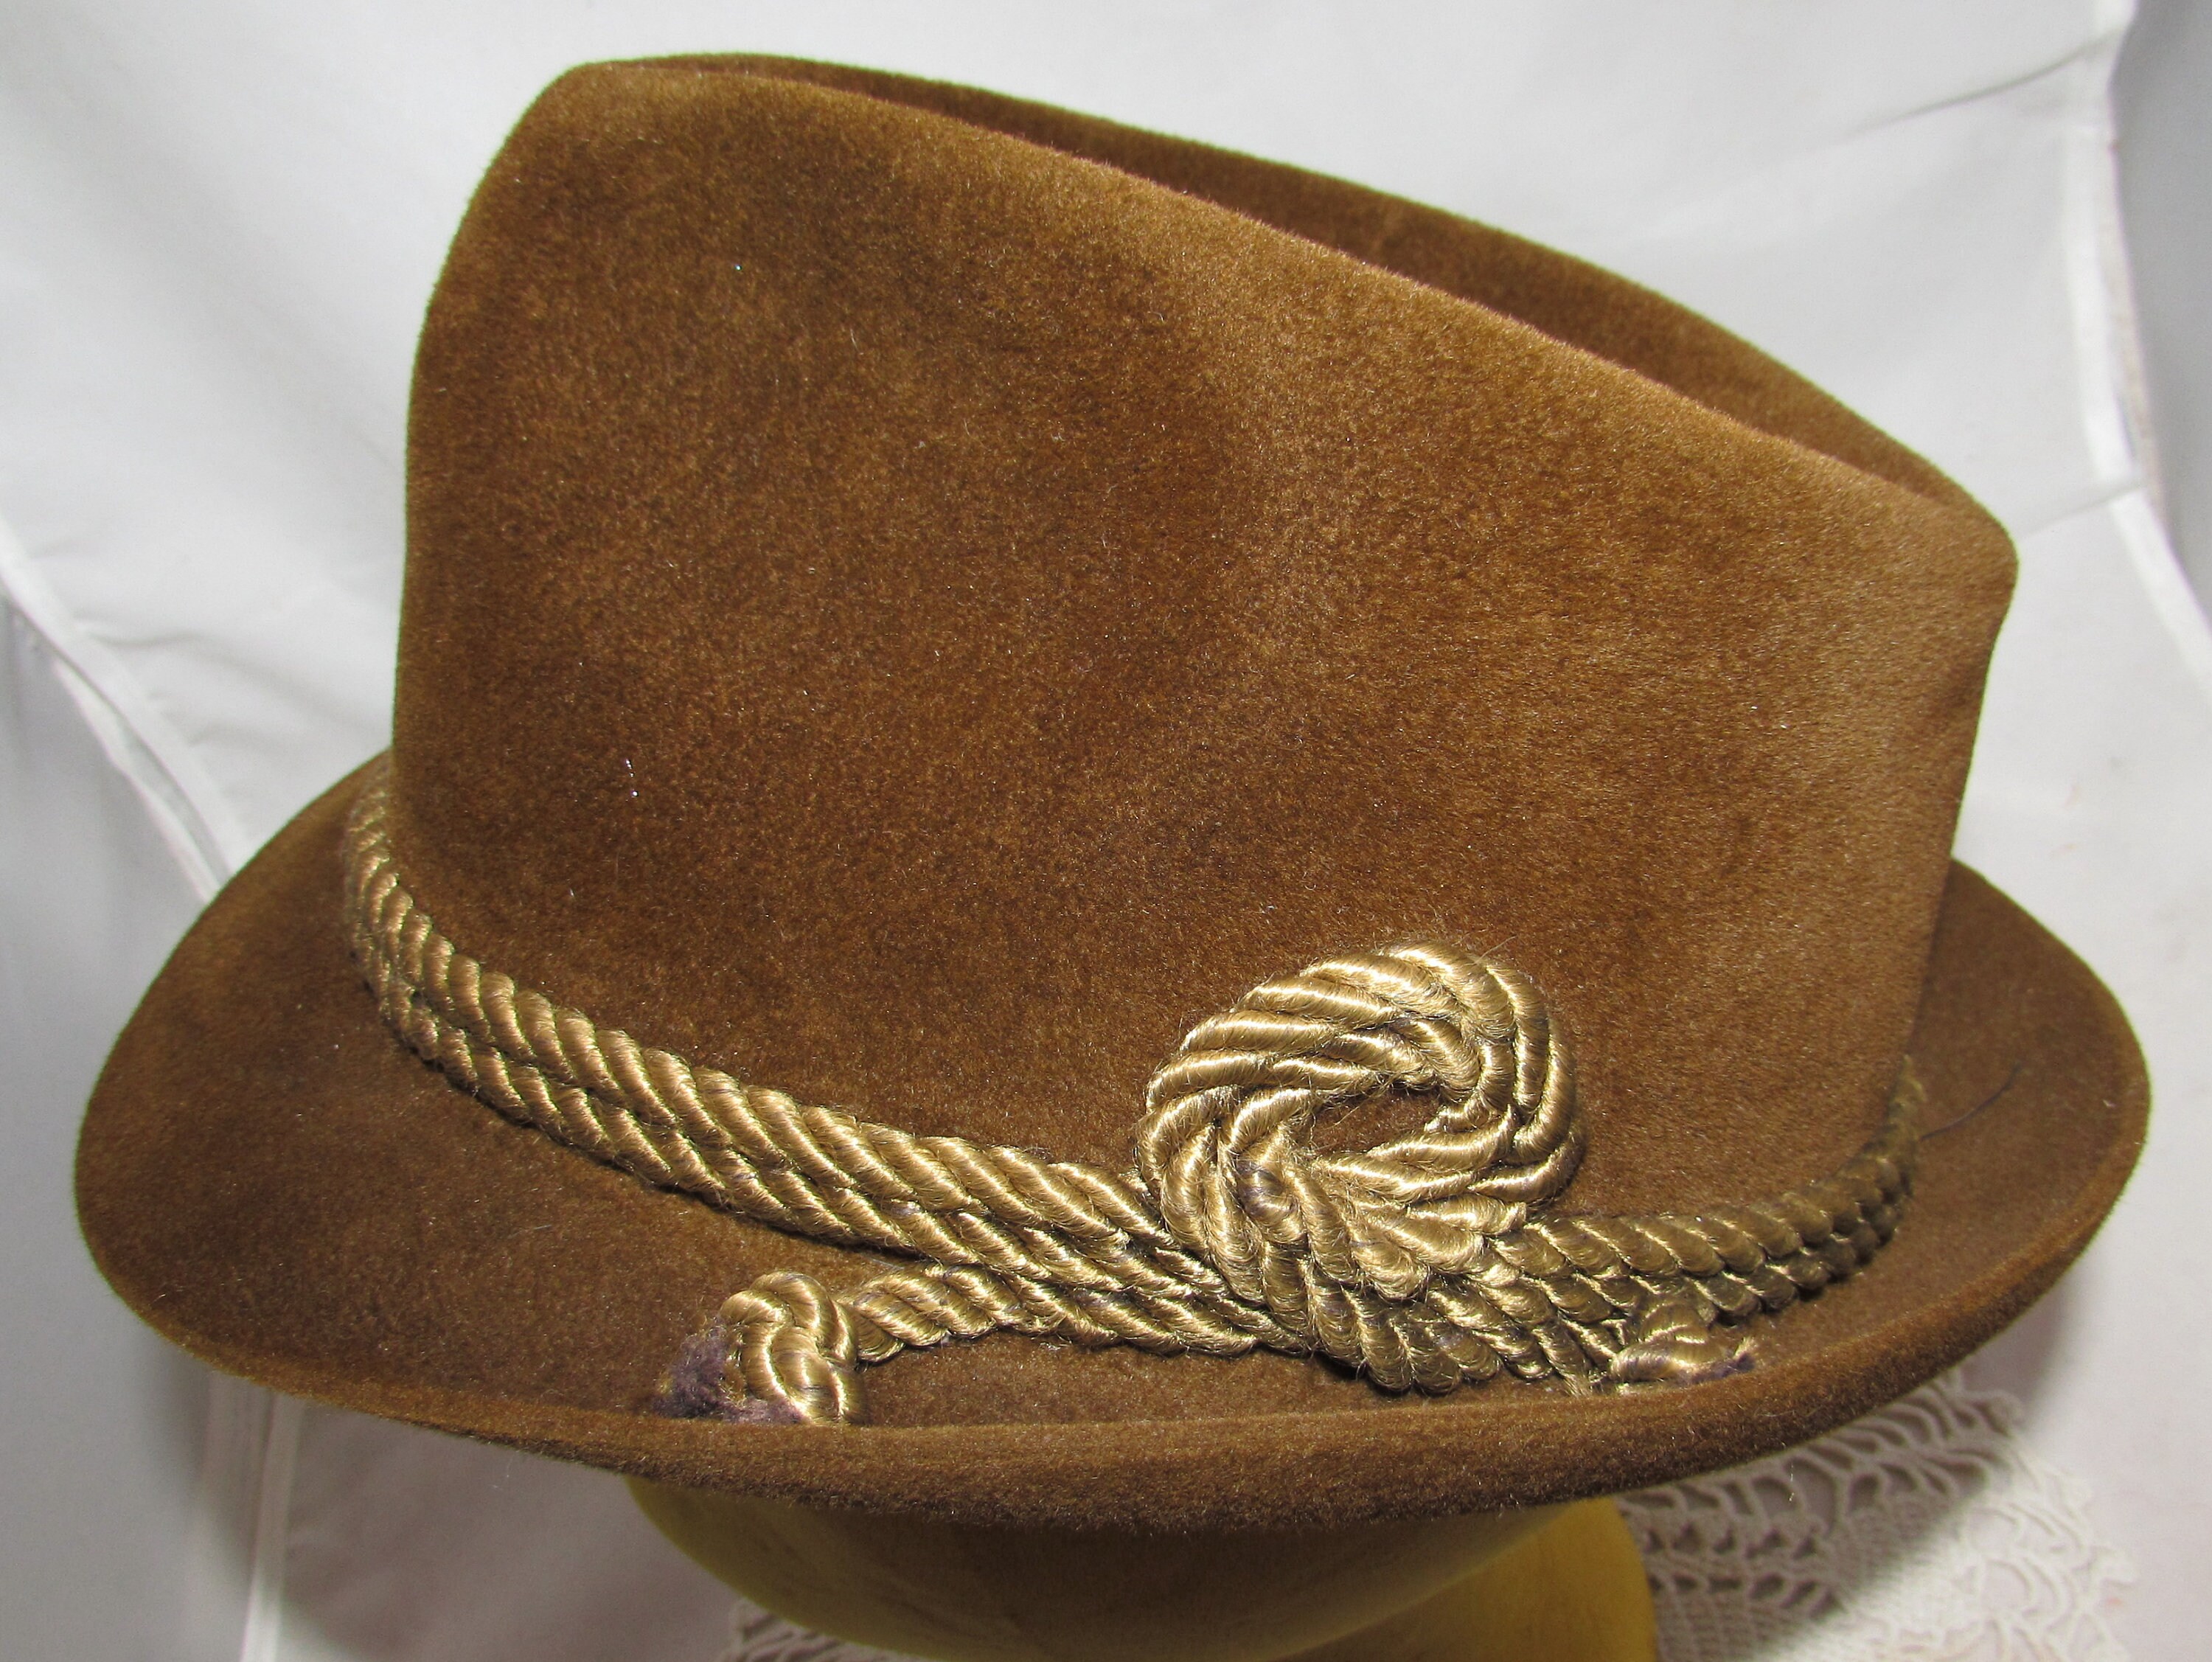 Geissele swag: Hat brown ripstock